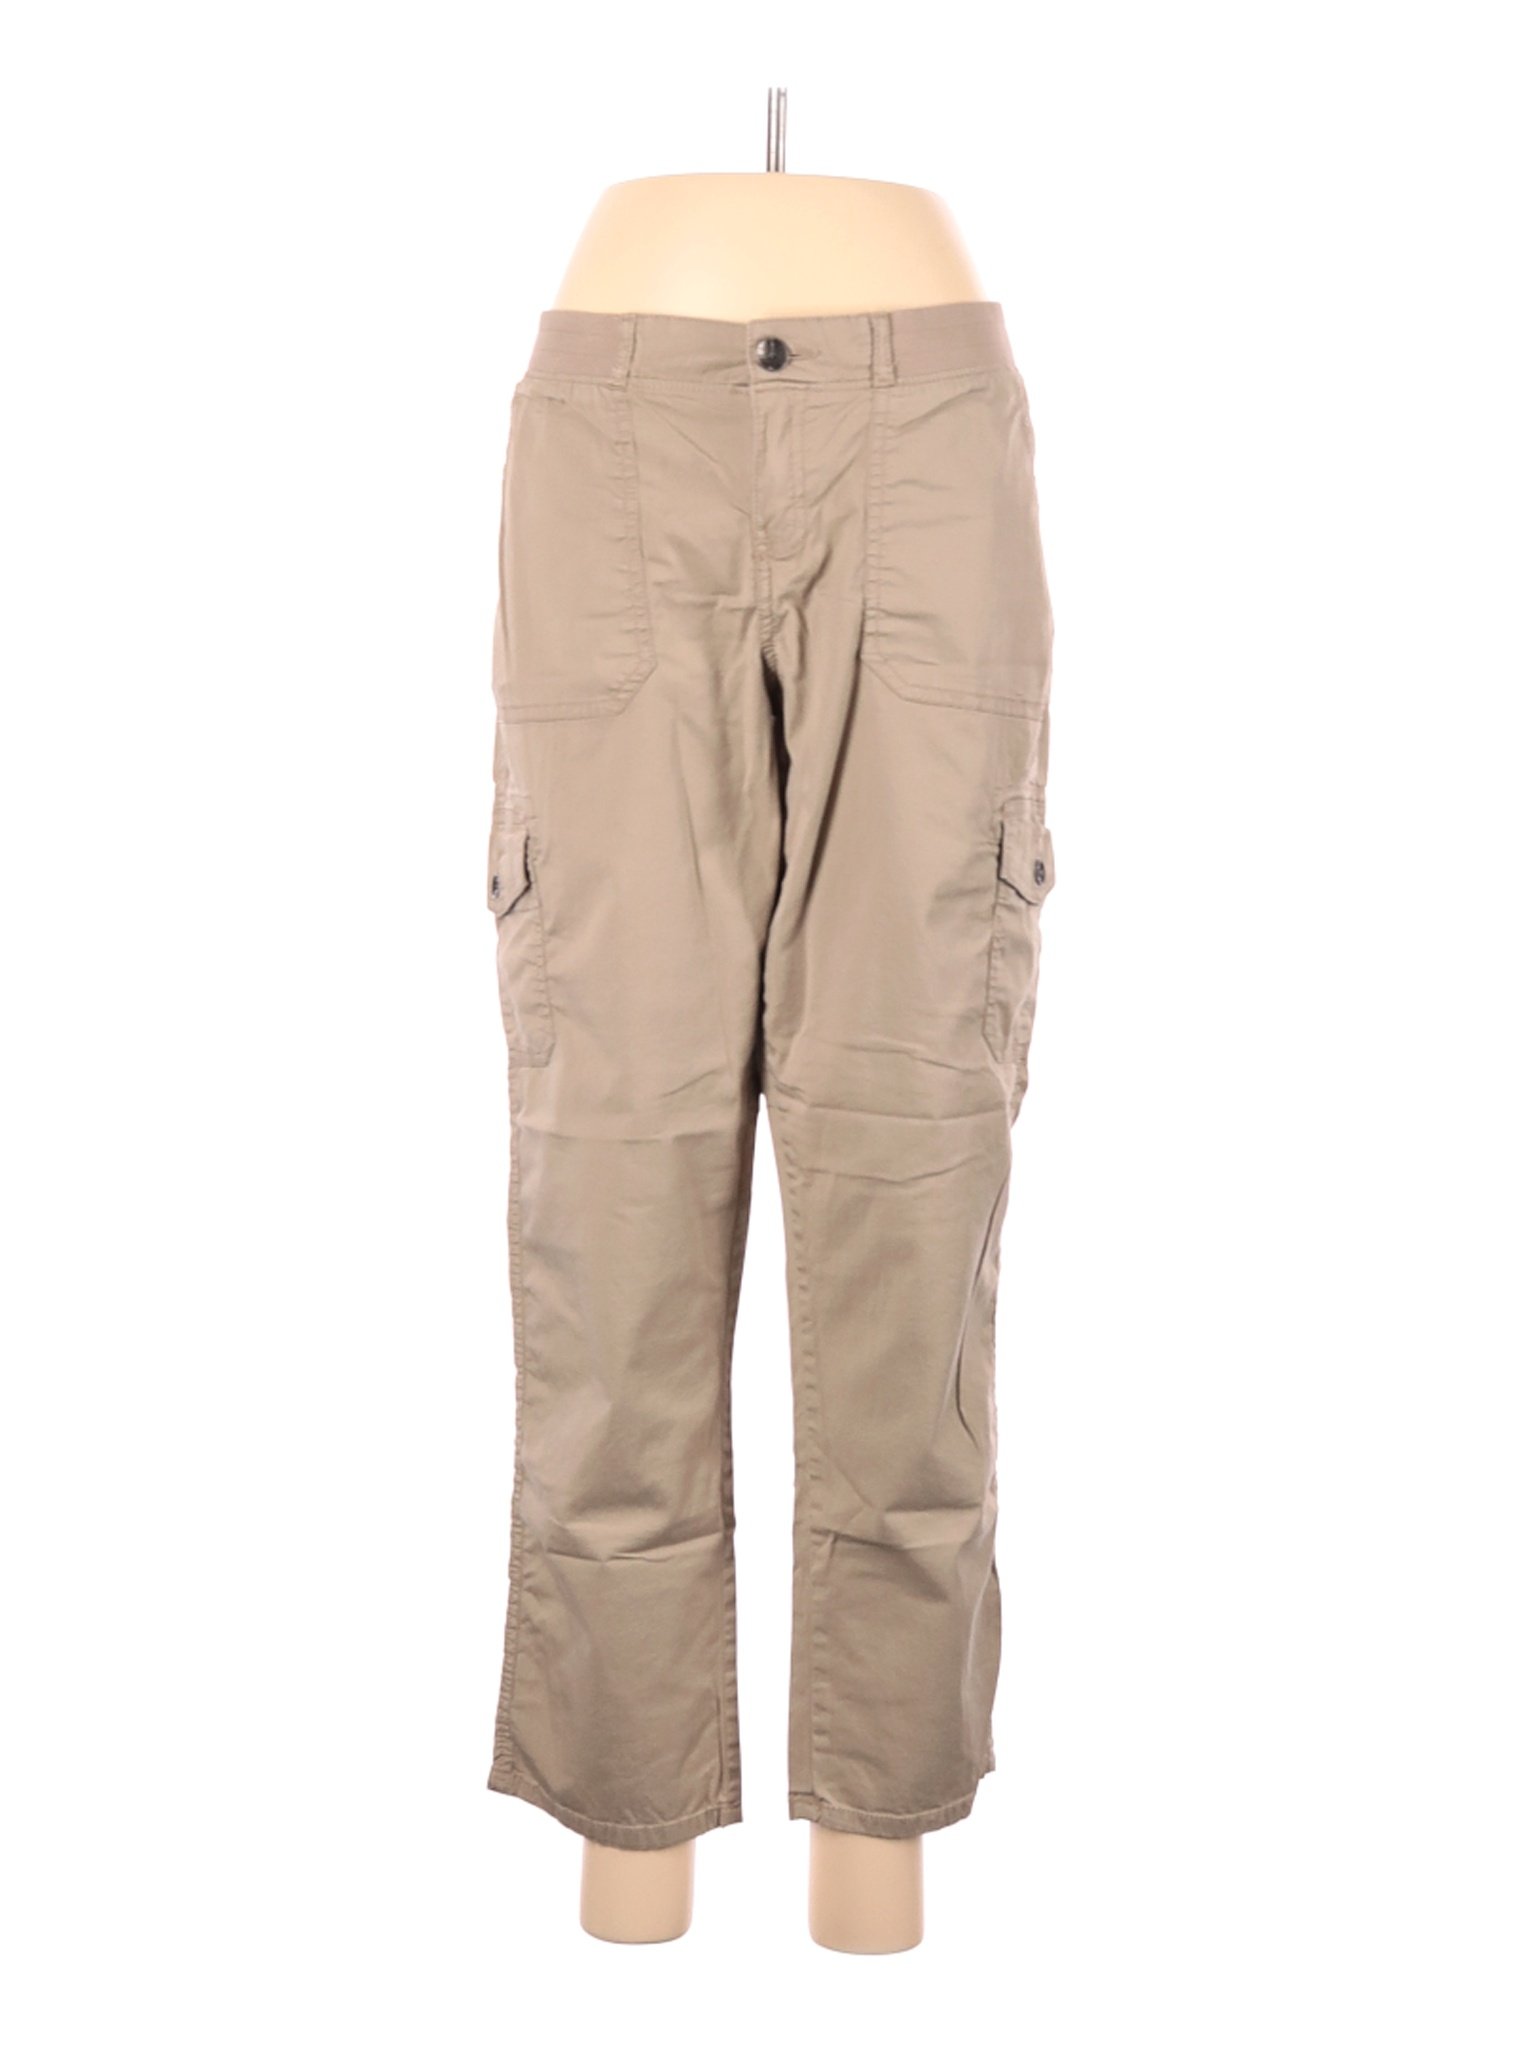 Sonoma Goods for Life Women Brown Cargo Pants 12 | eBay